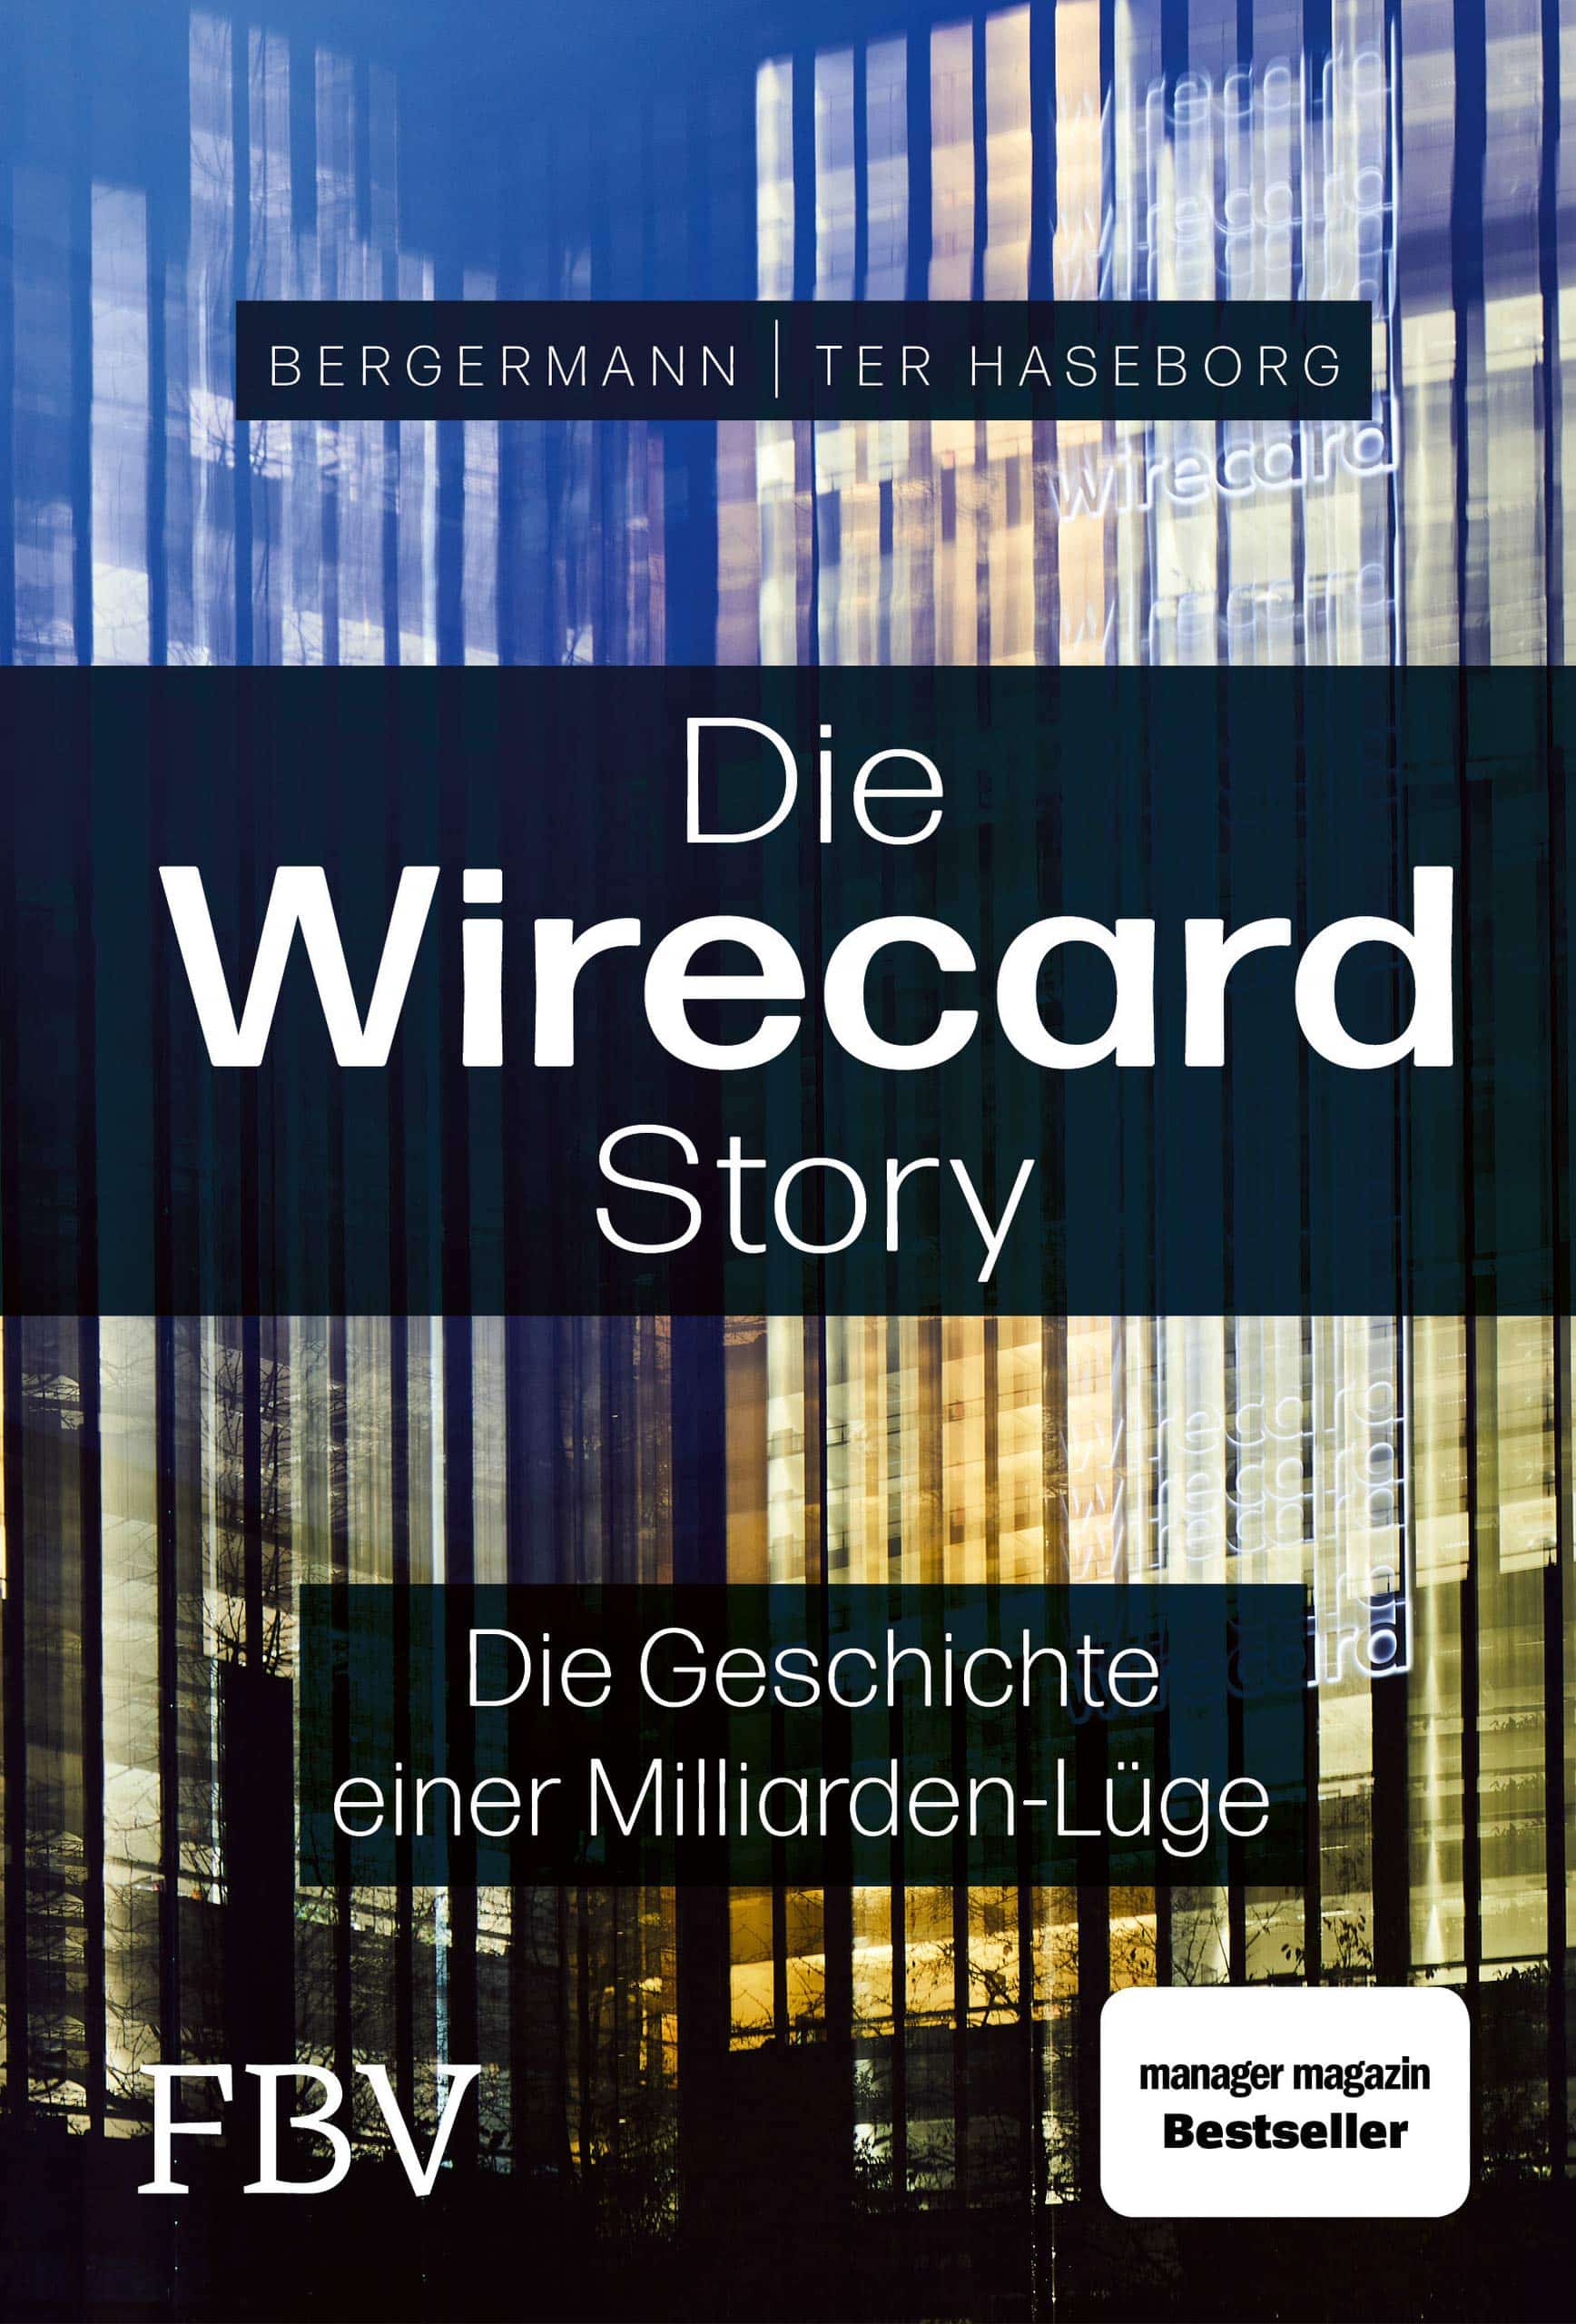 Die Wirecard Story